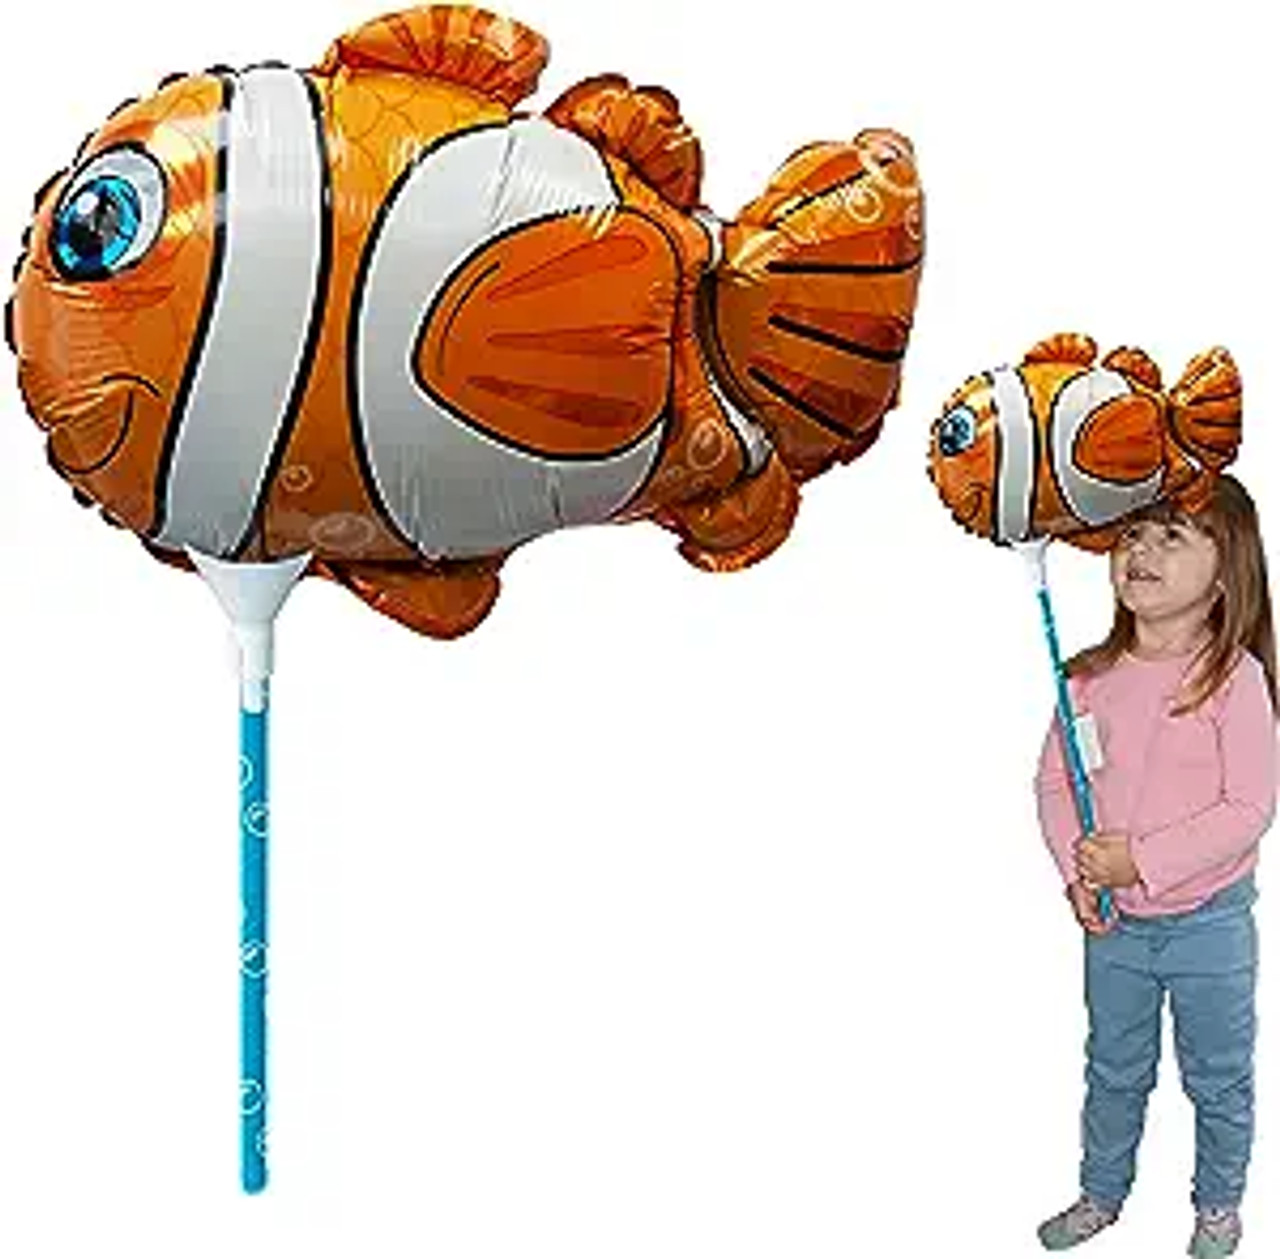 Clown Fish Ballooniac